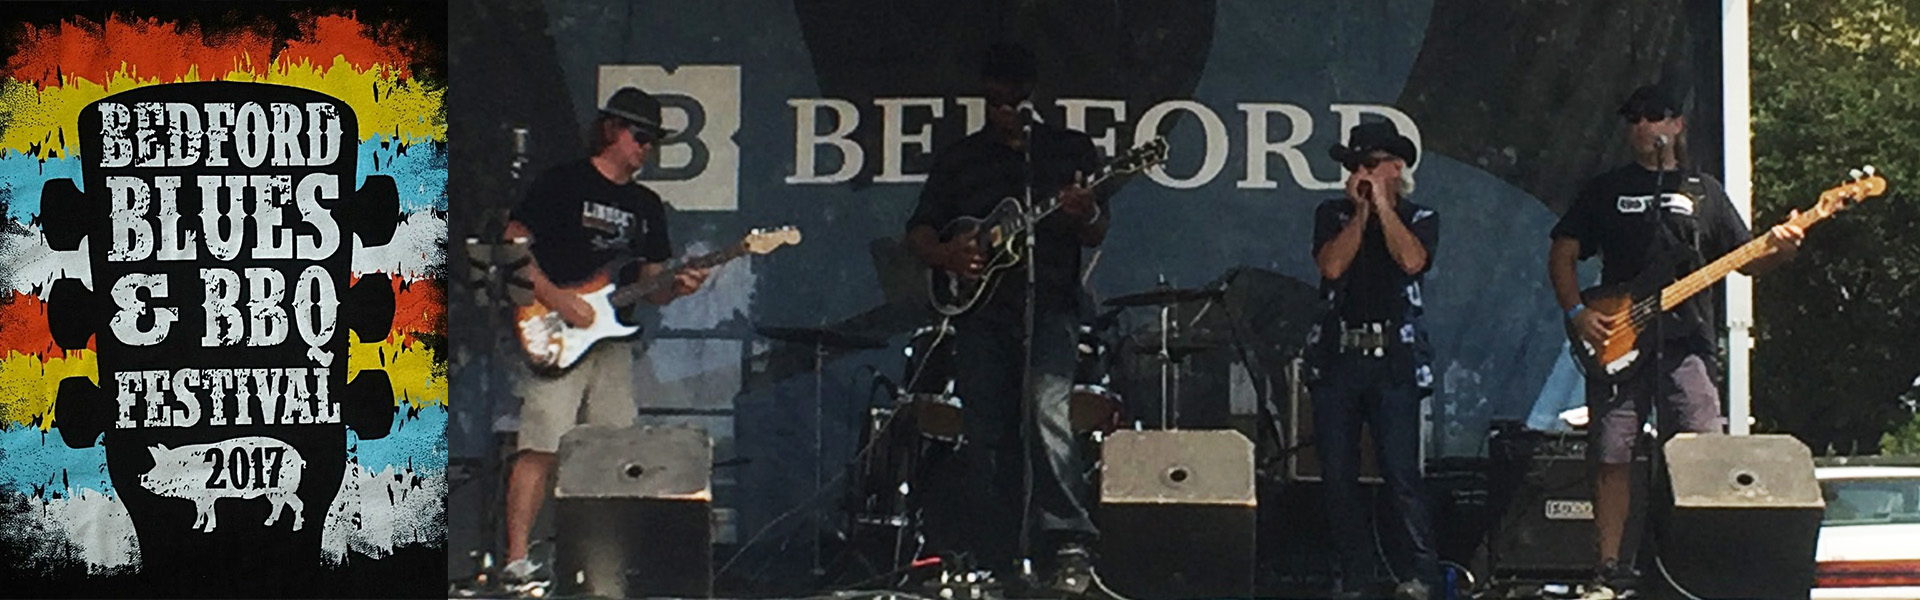 Janky Surprises Bedford Blues Fest